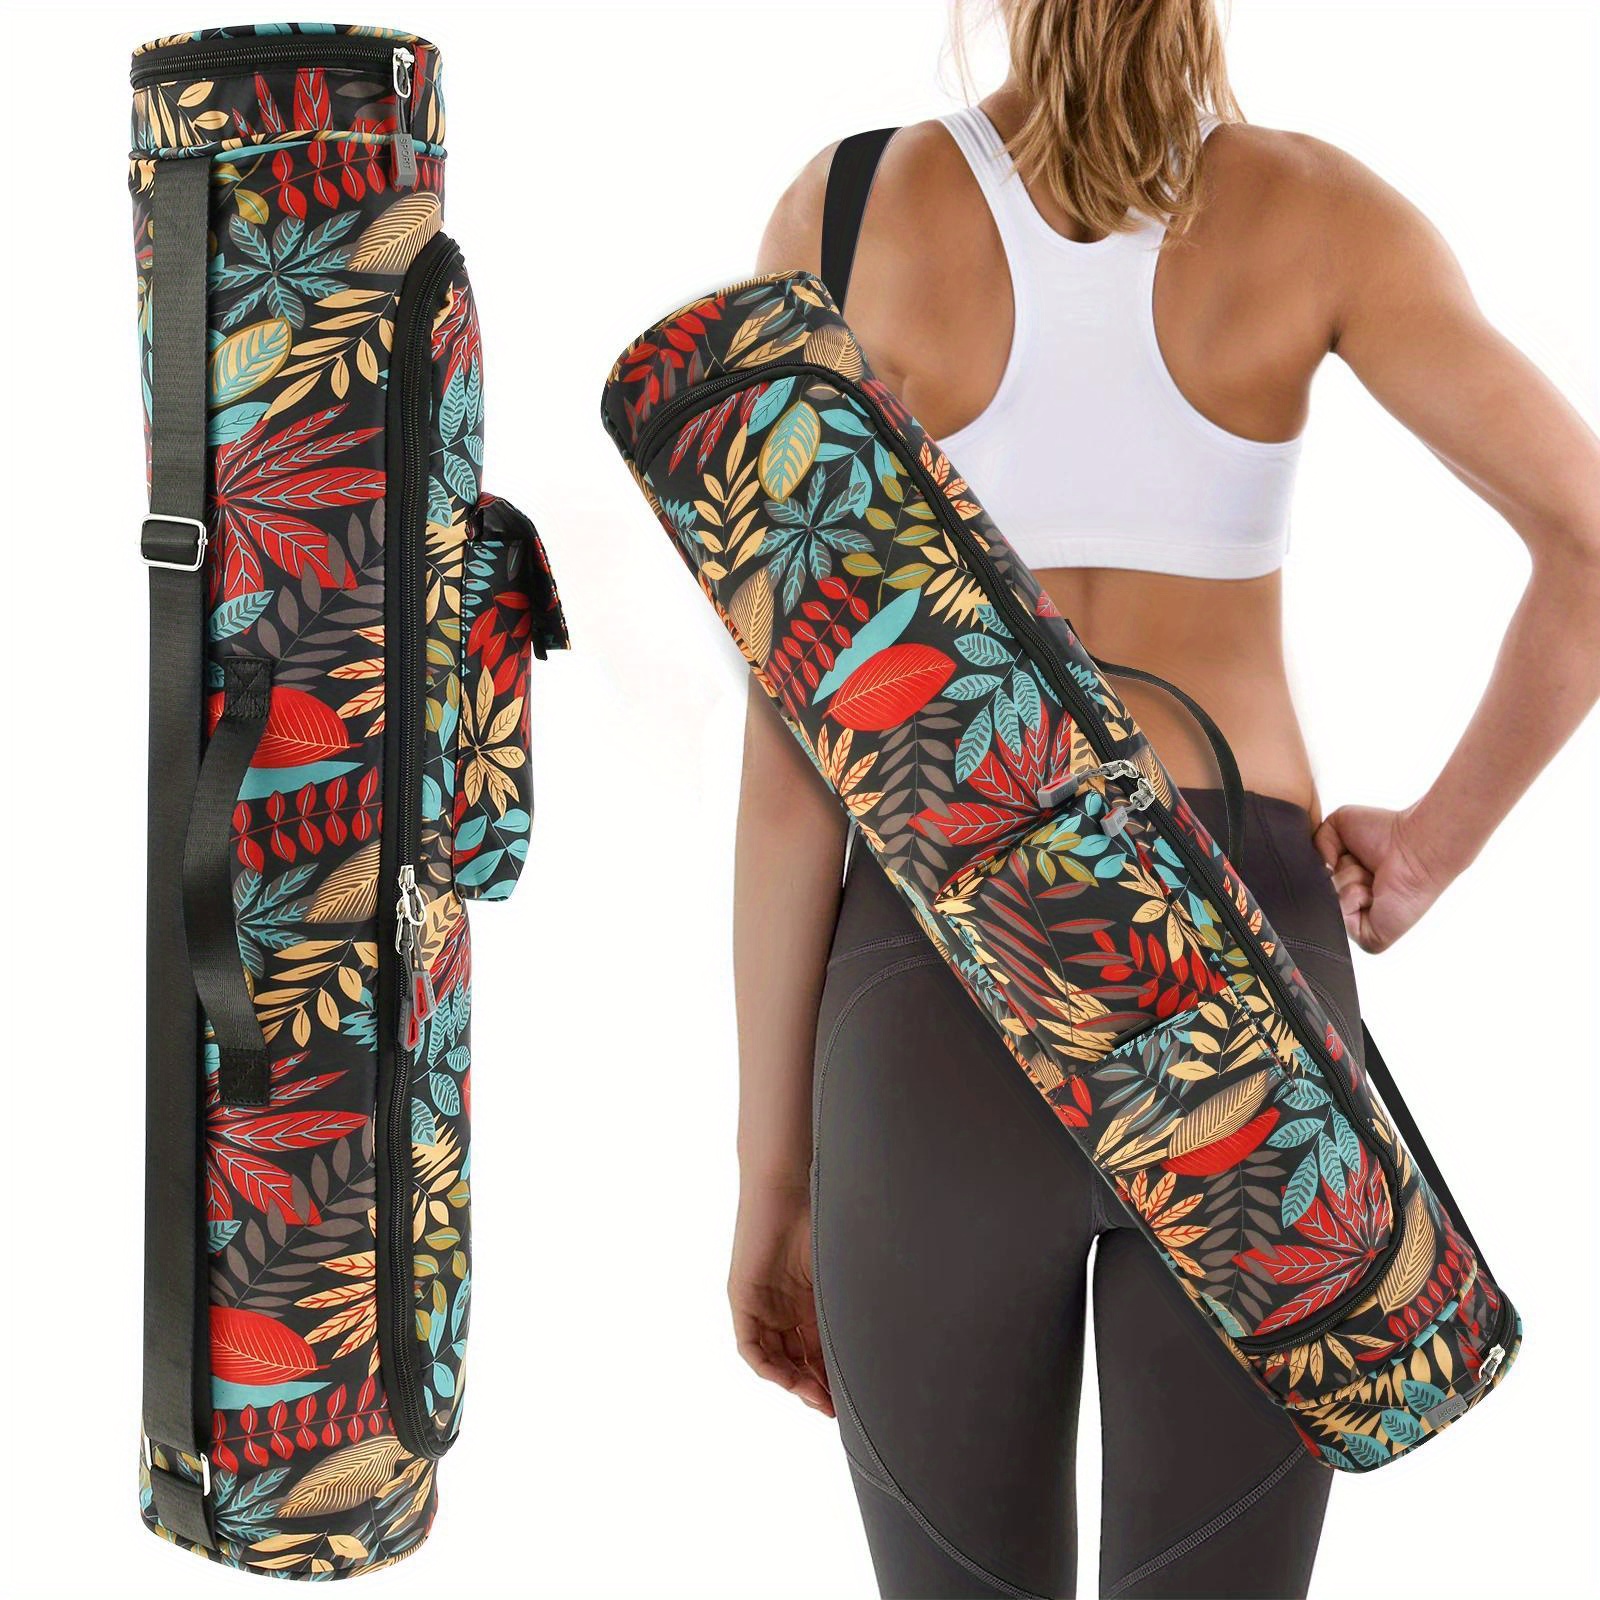 1Pc Gym Mat Carry Bag,Yoga Mat Storage Bag,Pilates Mat Bag,Shoulder Carrier  Pocket Foldable,Washable For Travel Gym